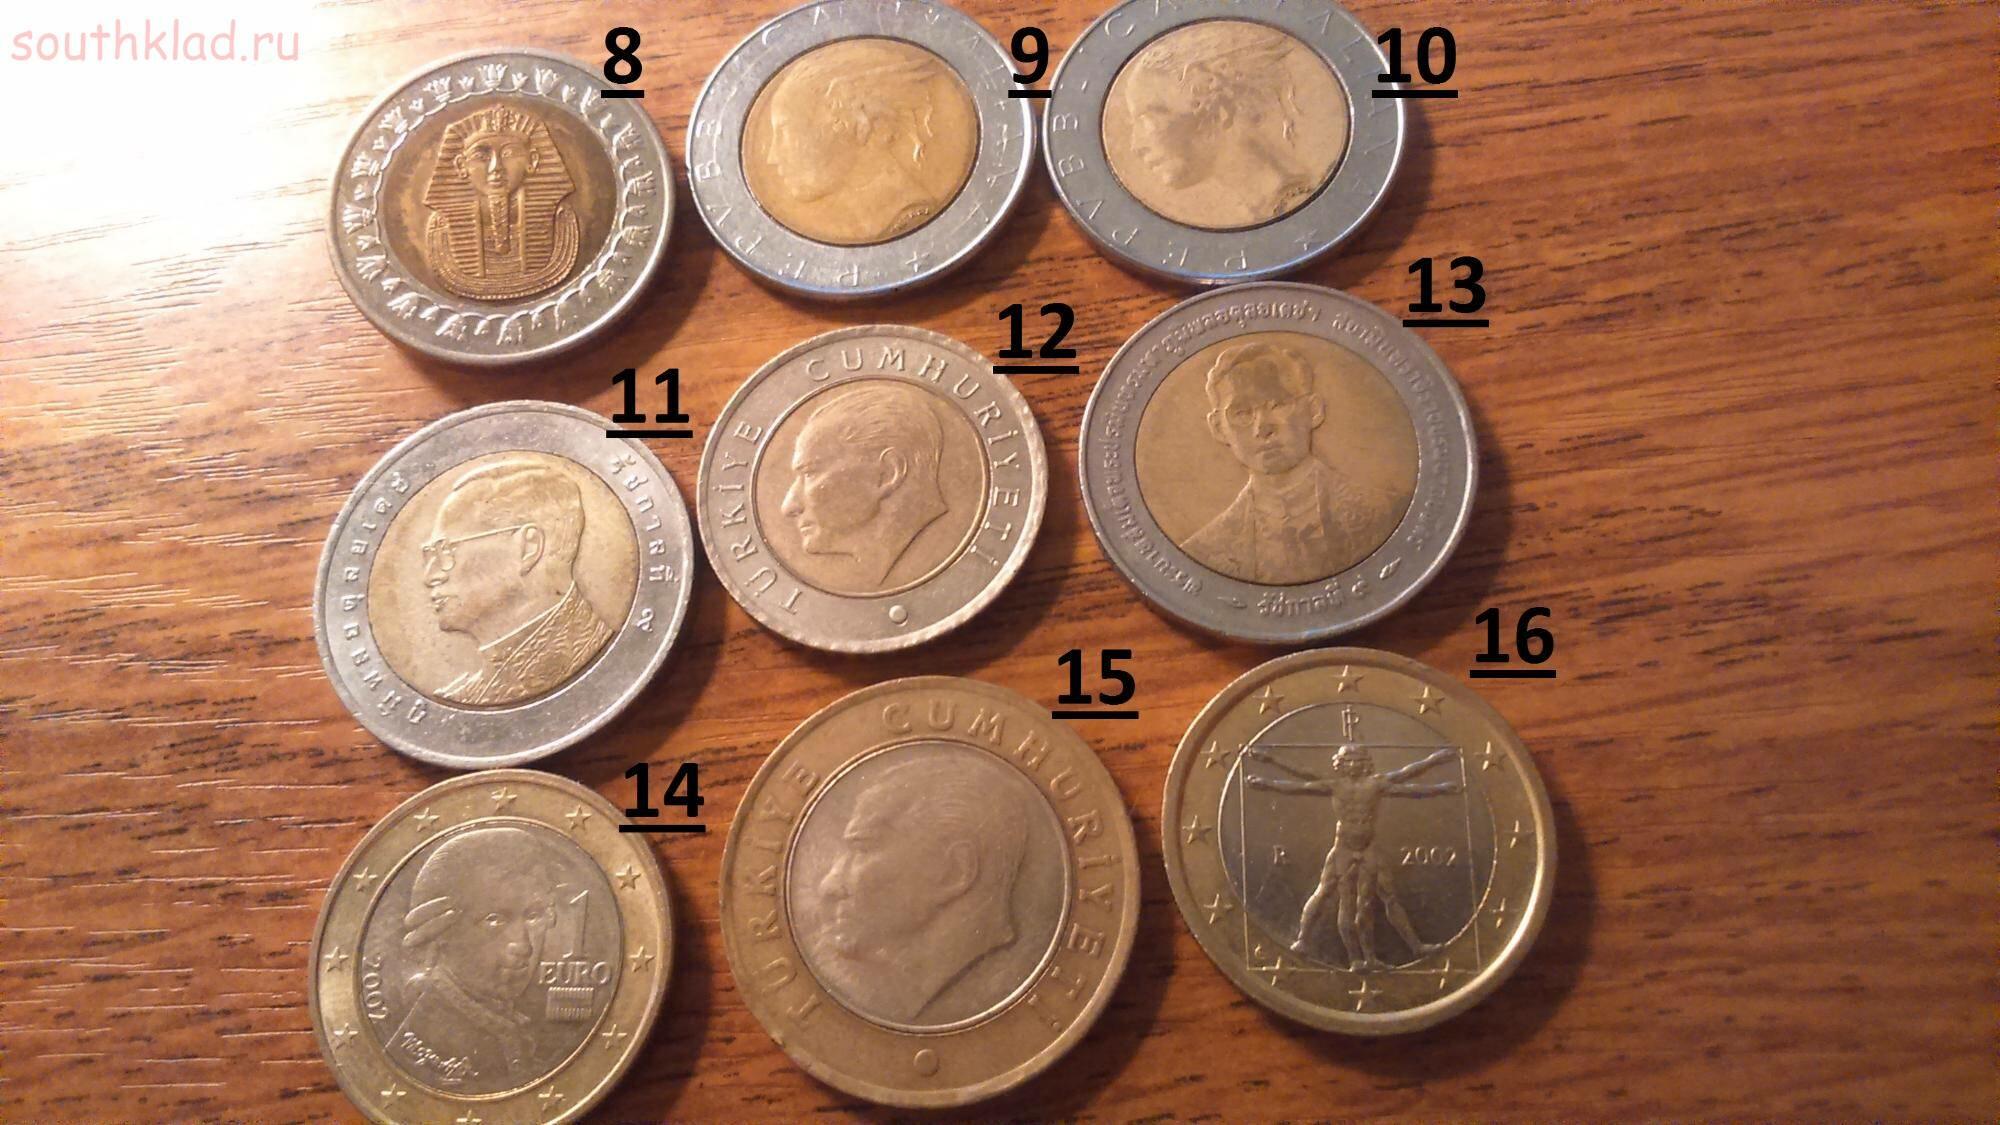 Проверить монеты на ценность онлайн по фото